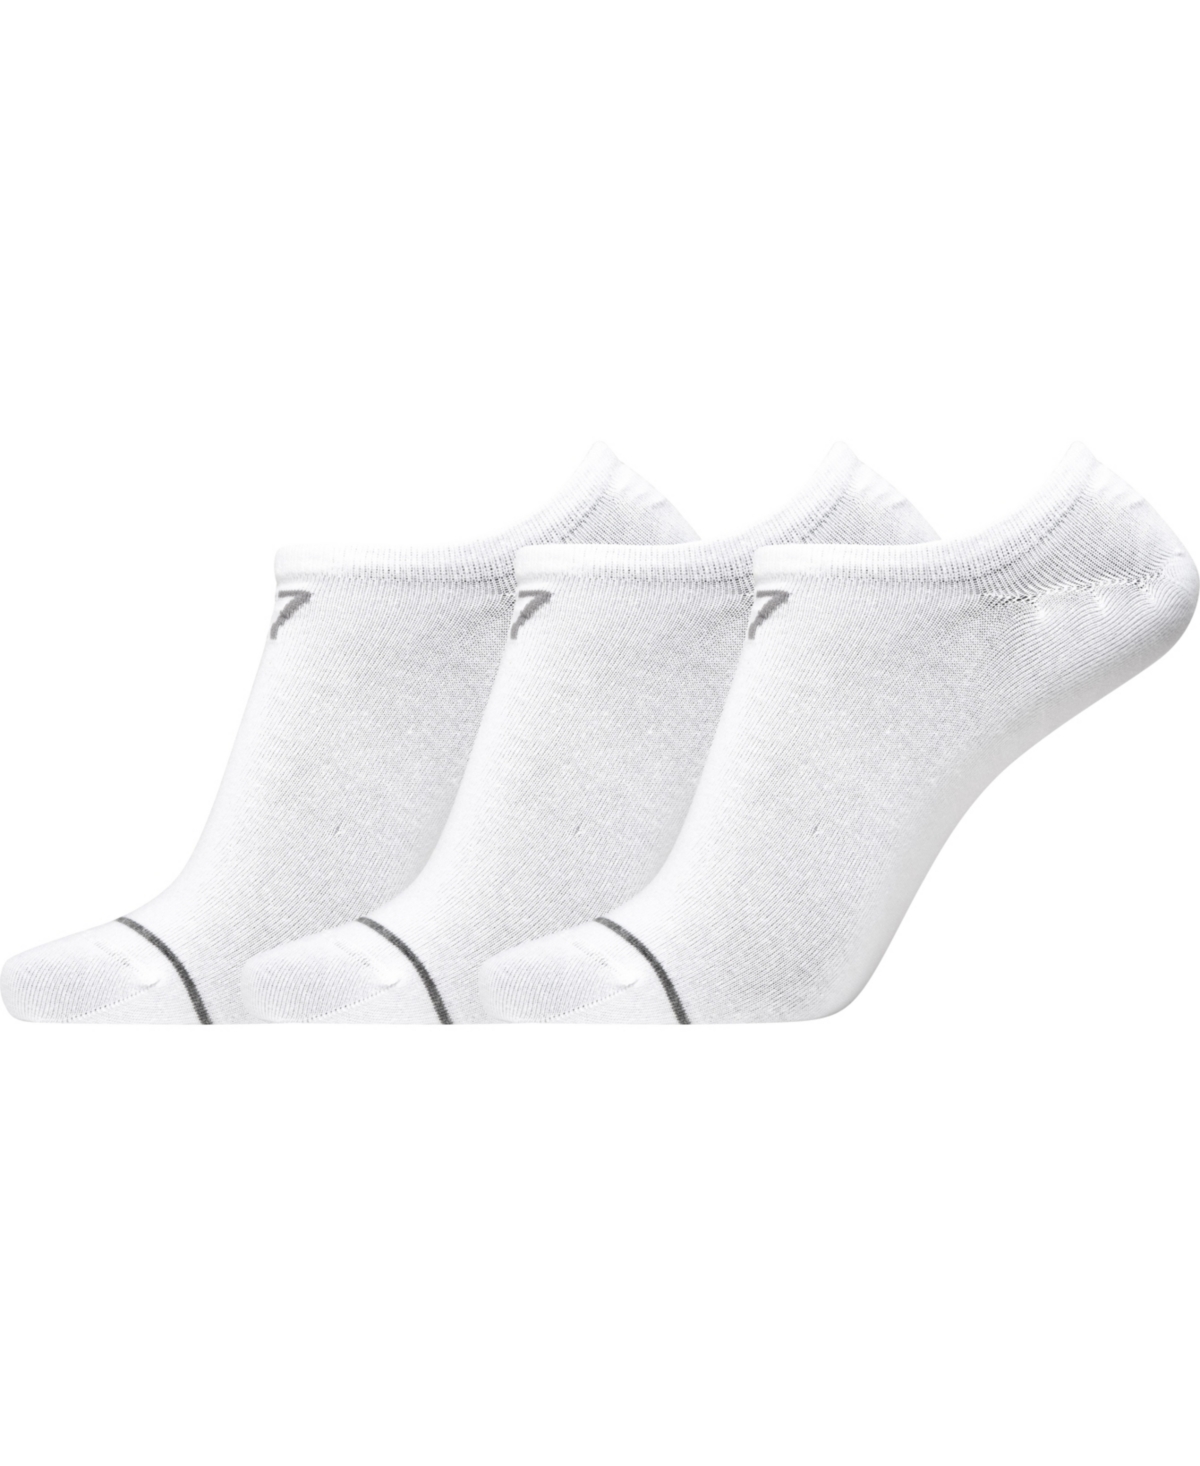 Cr7 Men's Athletic Footie Socks, Pack Of 3 In White